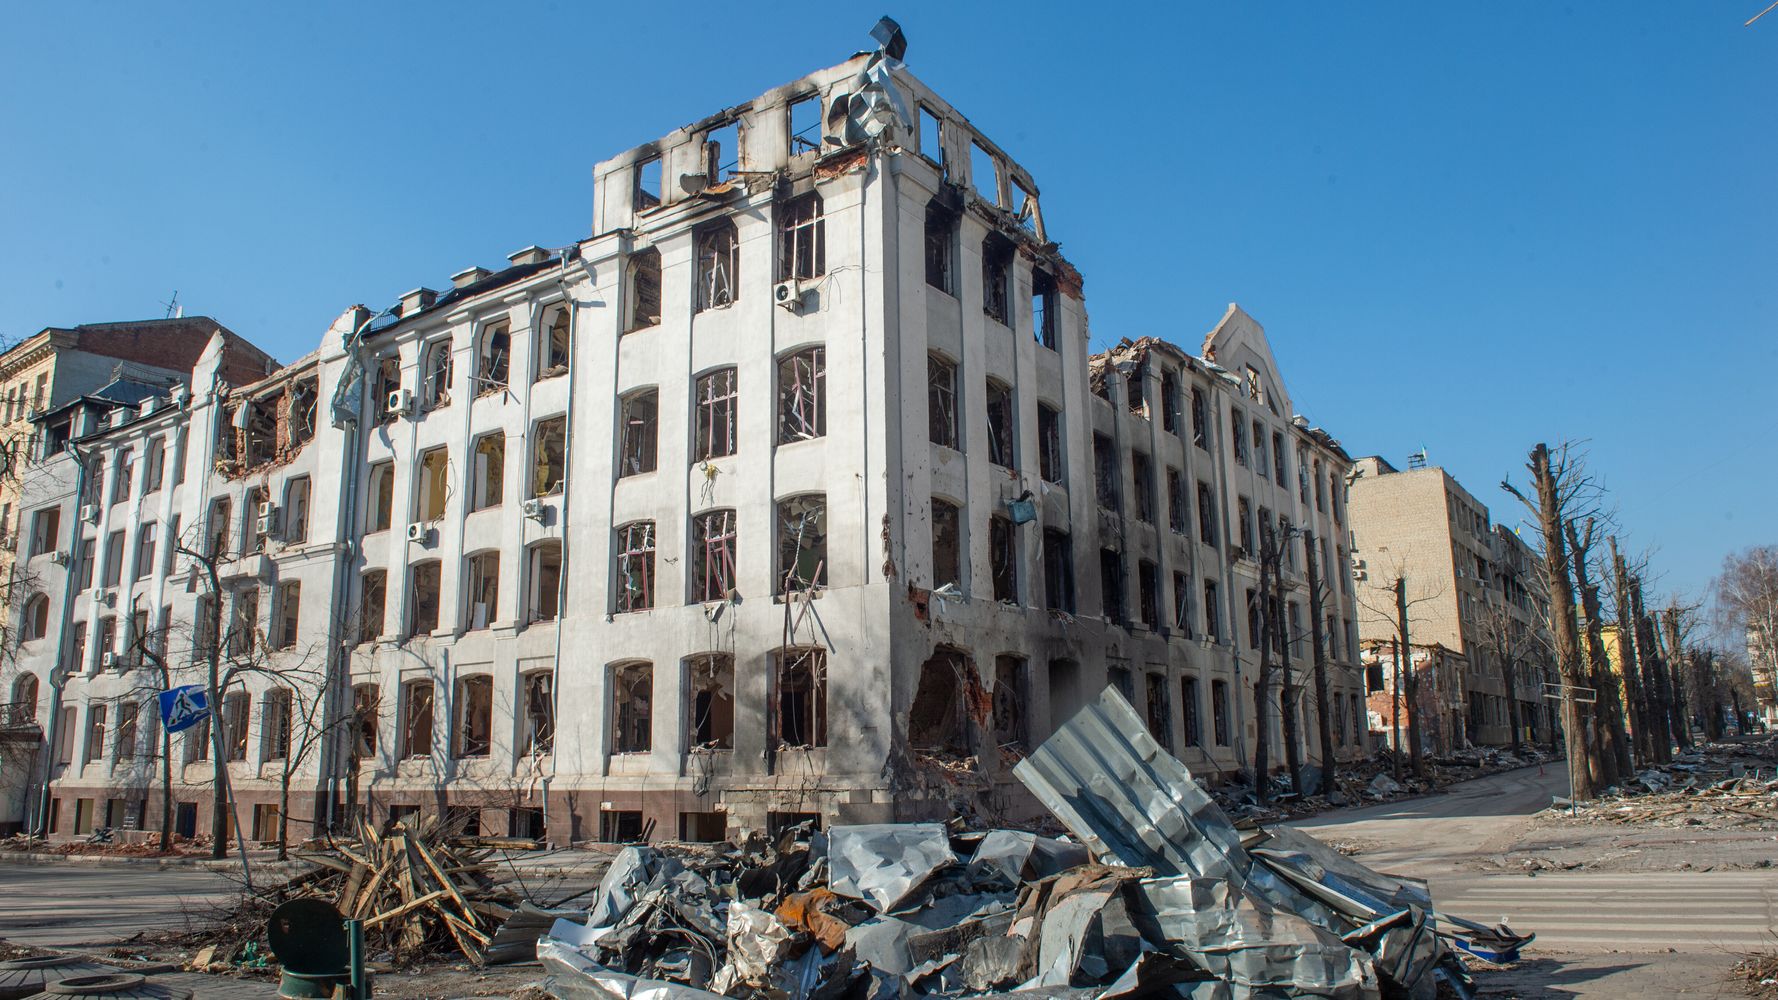 廃墟となったウクライナの街に響くチェロ 建物を破壊できても魂は破壊できない と反響広がる 動画 ハフポスト World